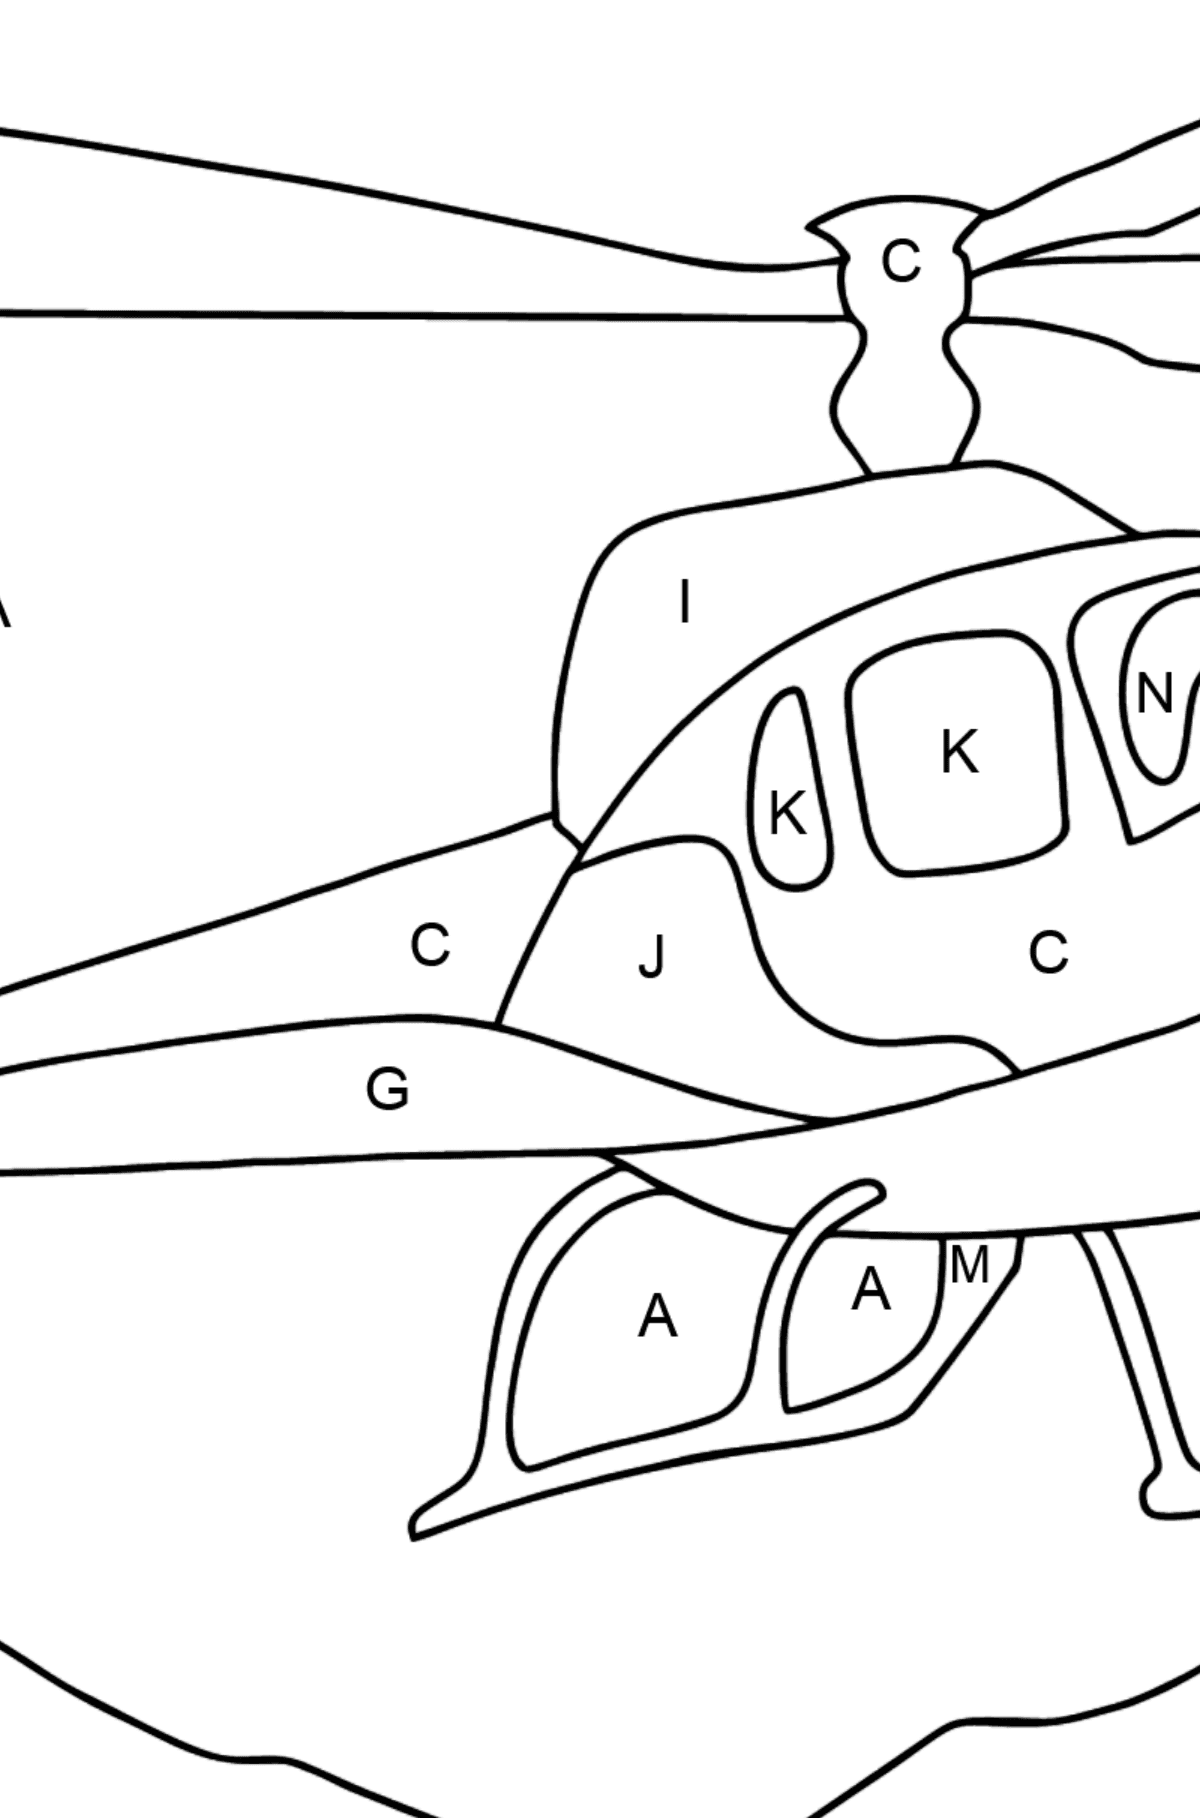 Dibujo para Colorear - Un Helicóptero de Ciudad - Colorear por Letras para Niños